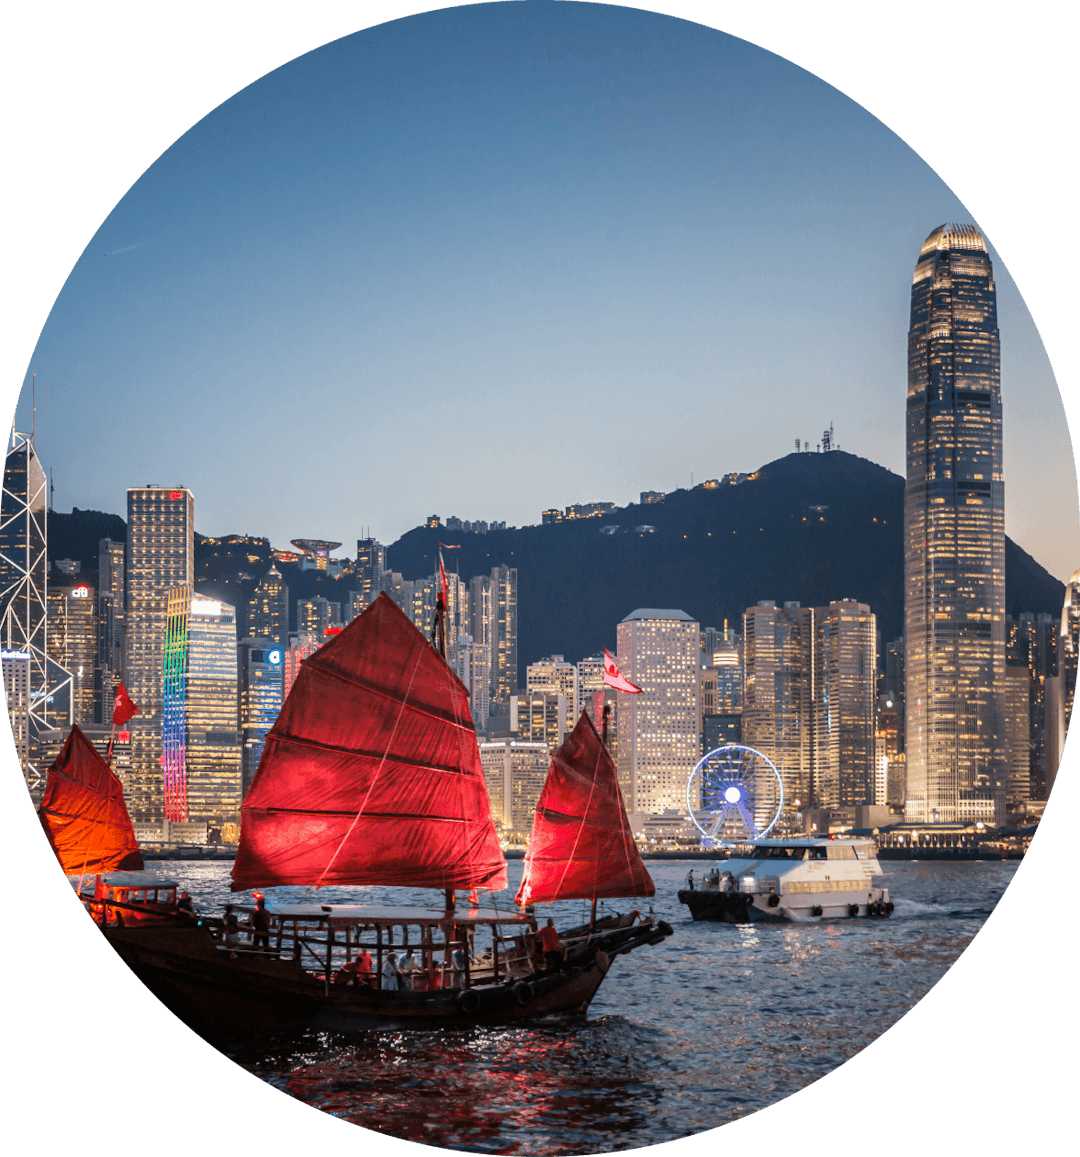 Jitta Ranking Hong Kong assets allocation